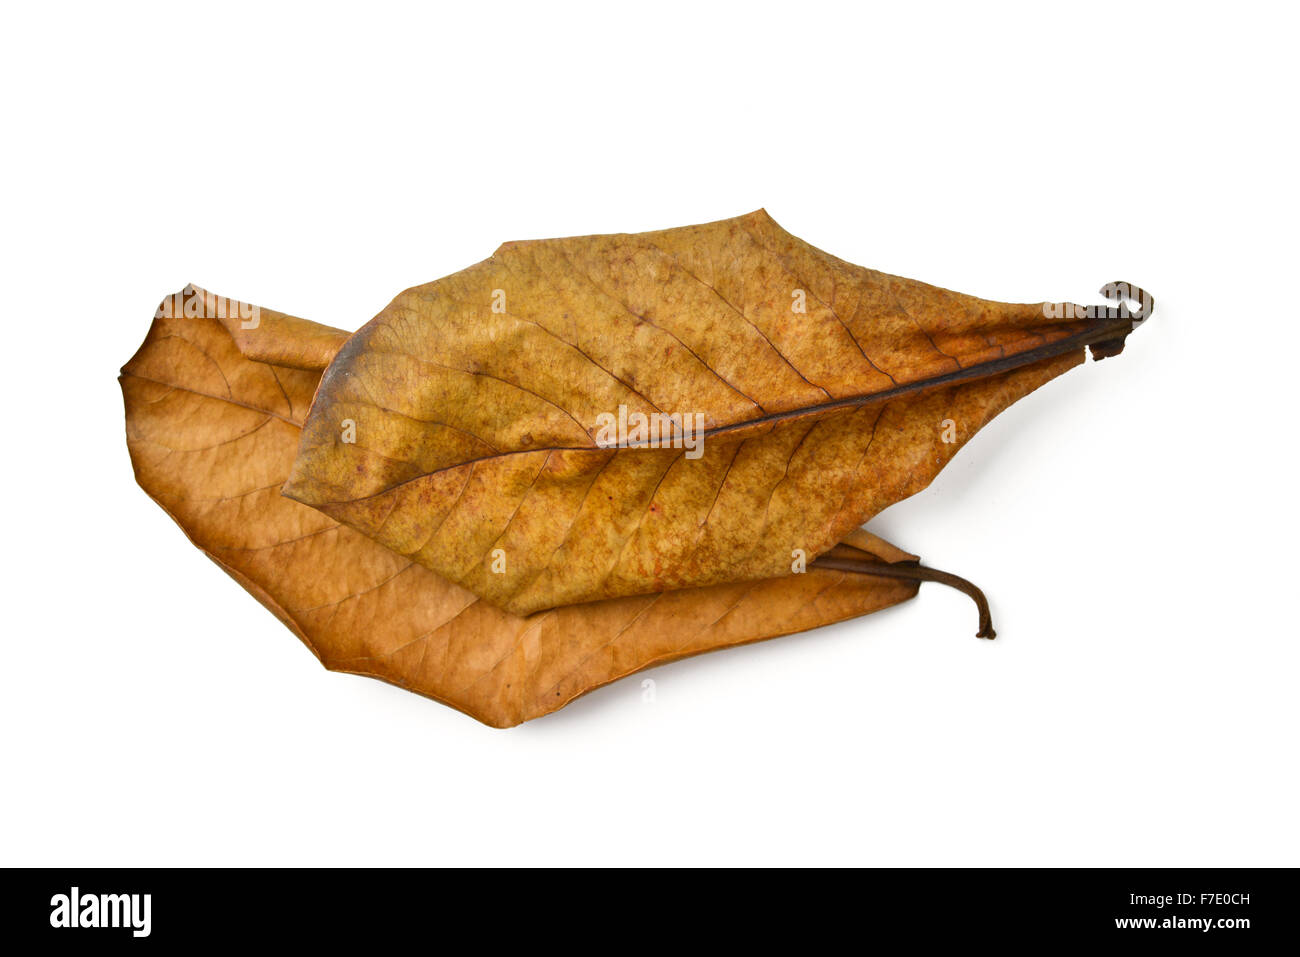 dry terminalia catappa leaf on white background Stock Photo